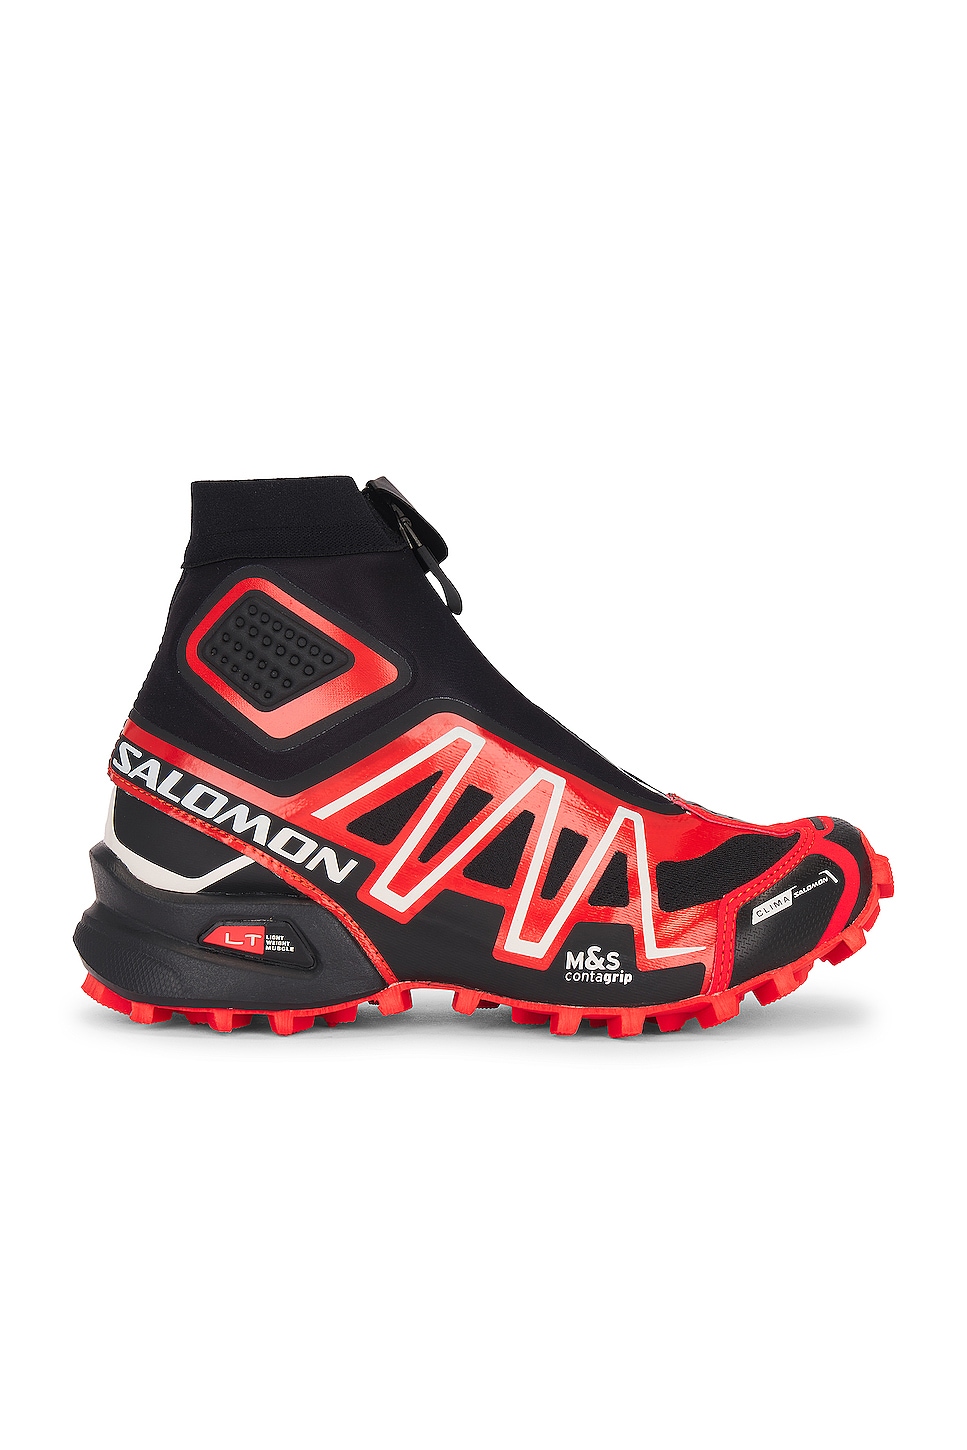 Image 1 of Salomon Snowcross Sneaker in Black, Fiery Red, & Vanilla